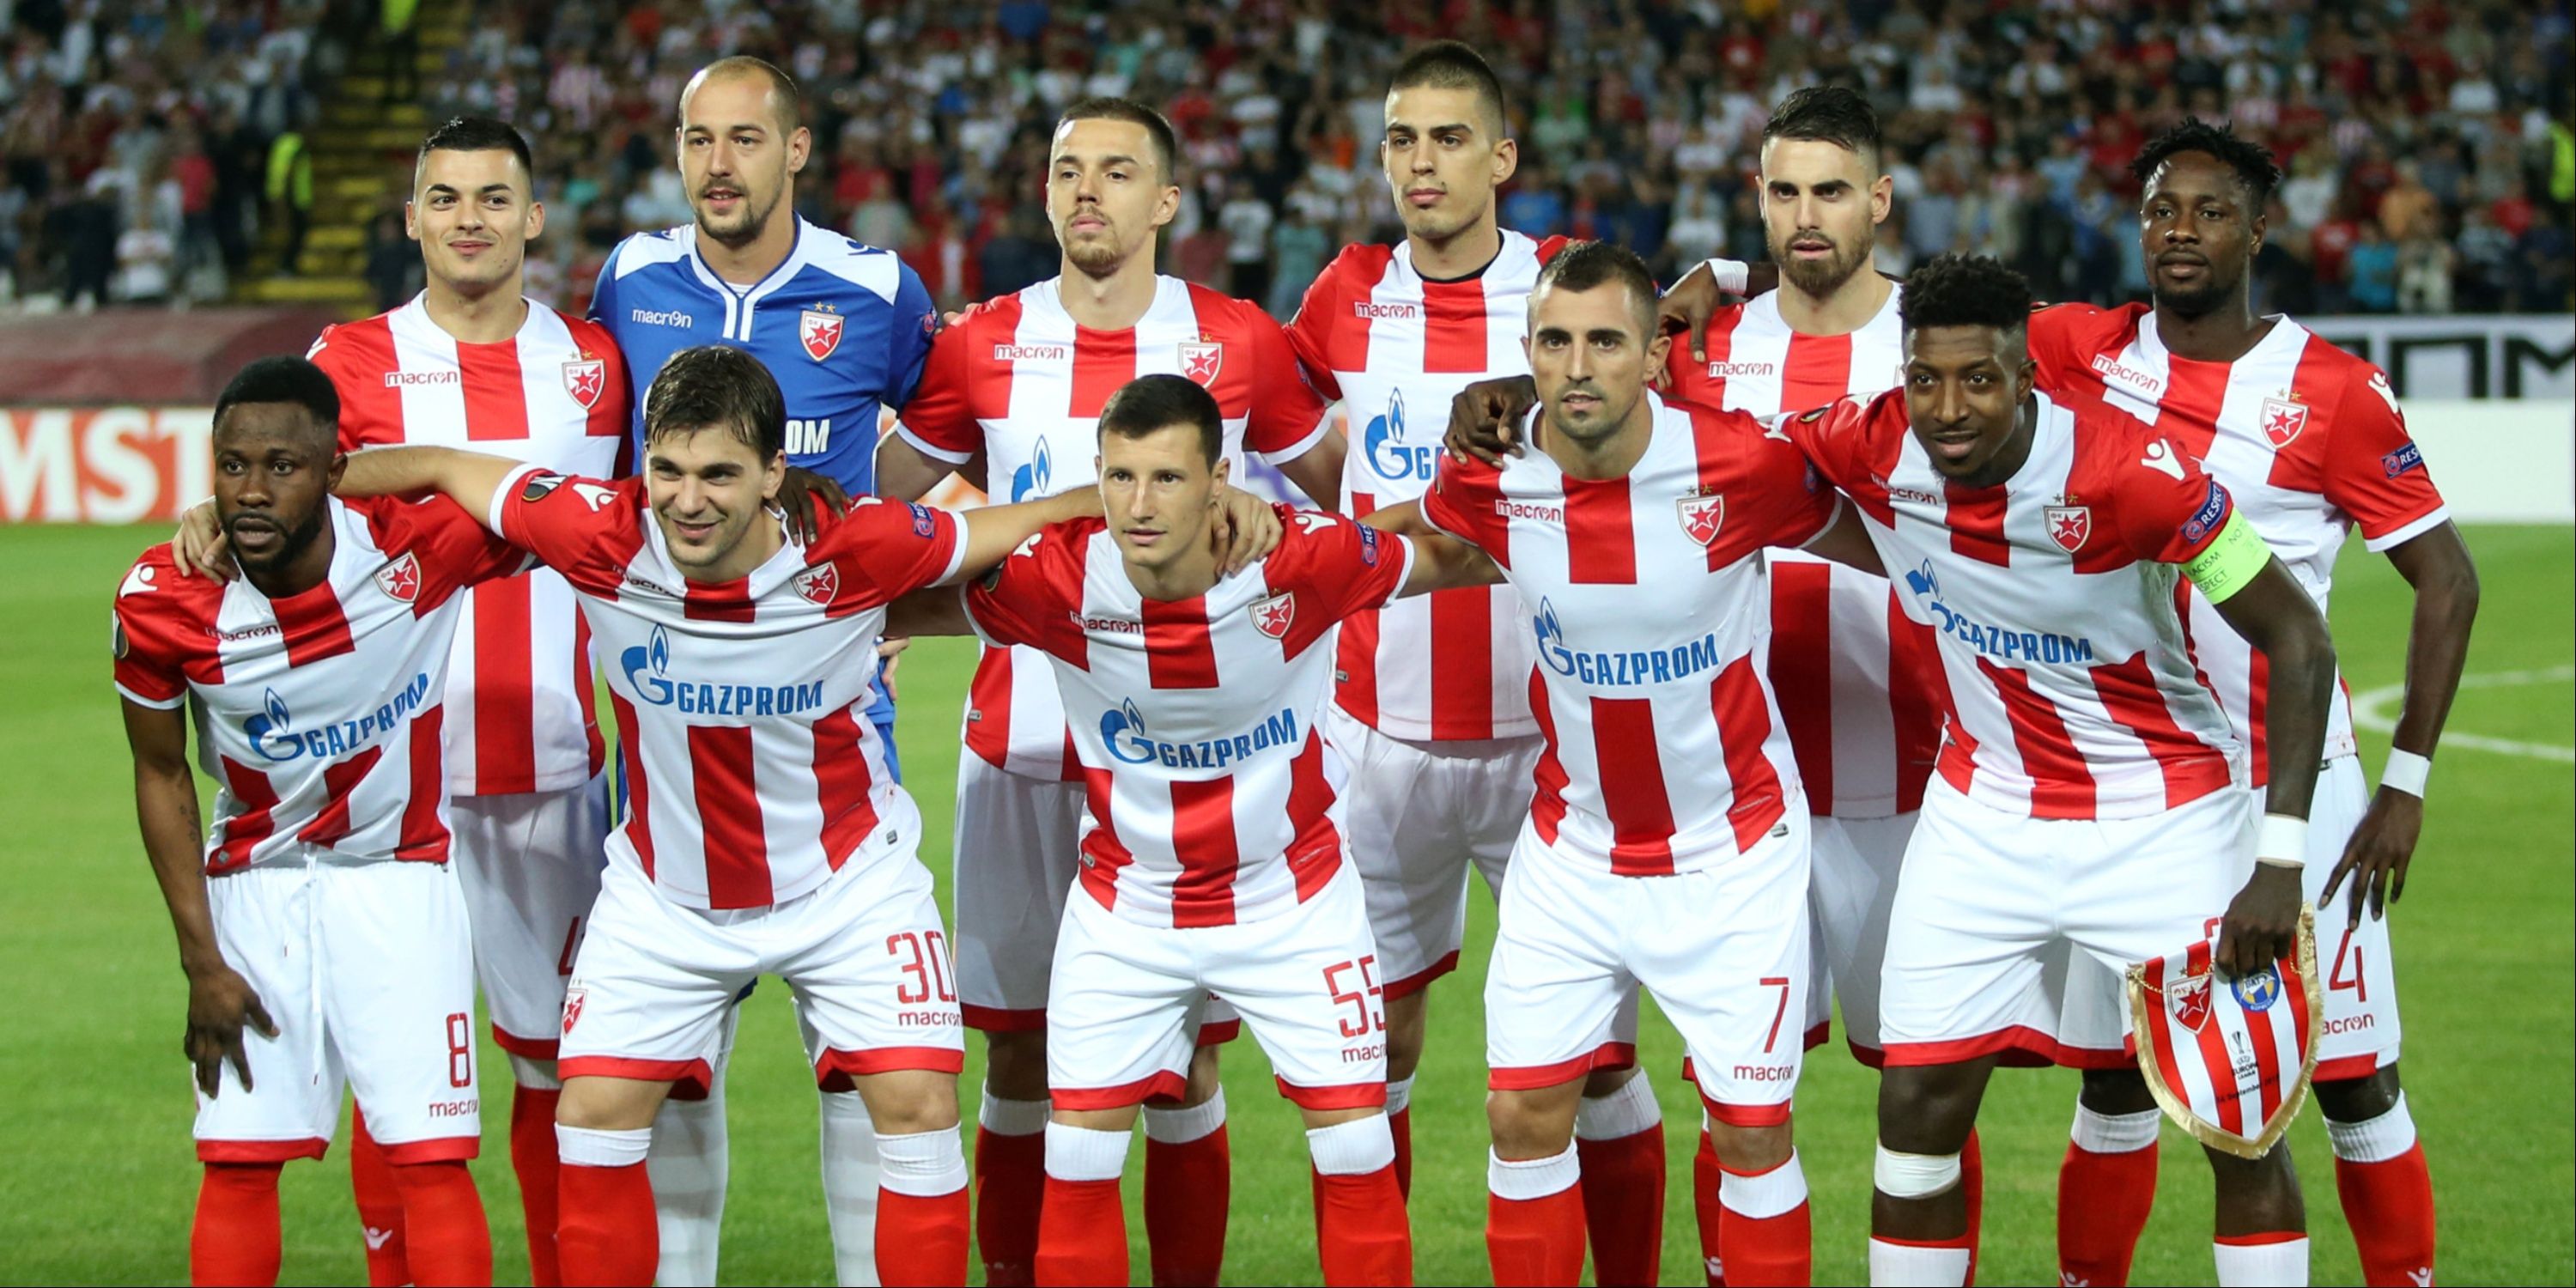 Crvena Zvezda lineup